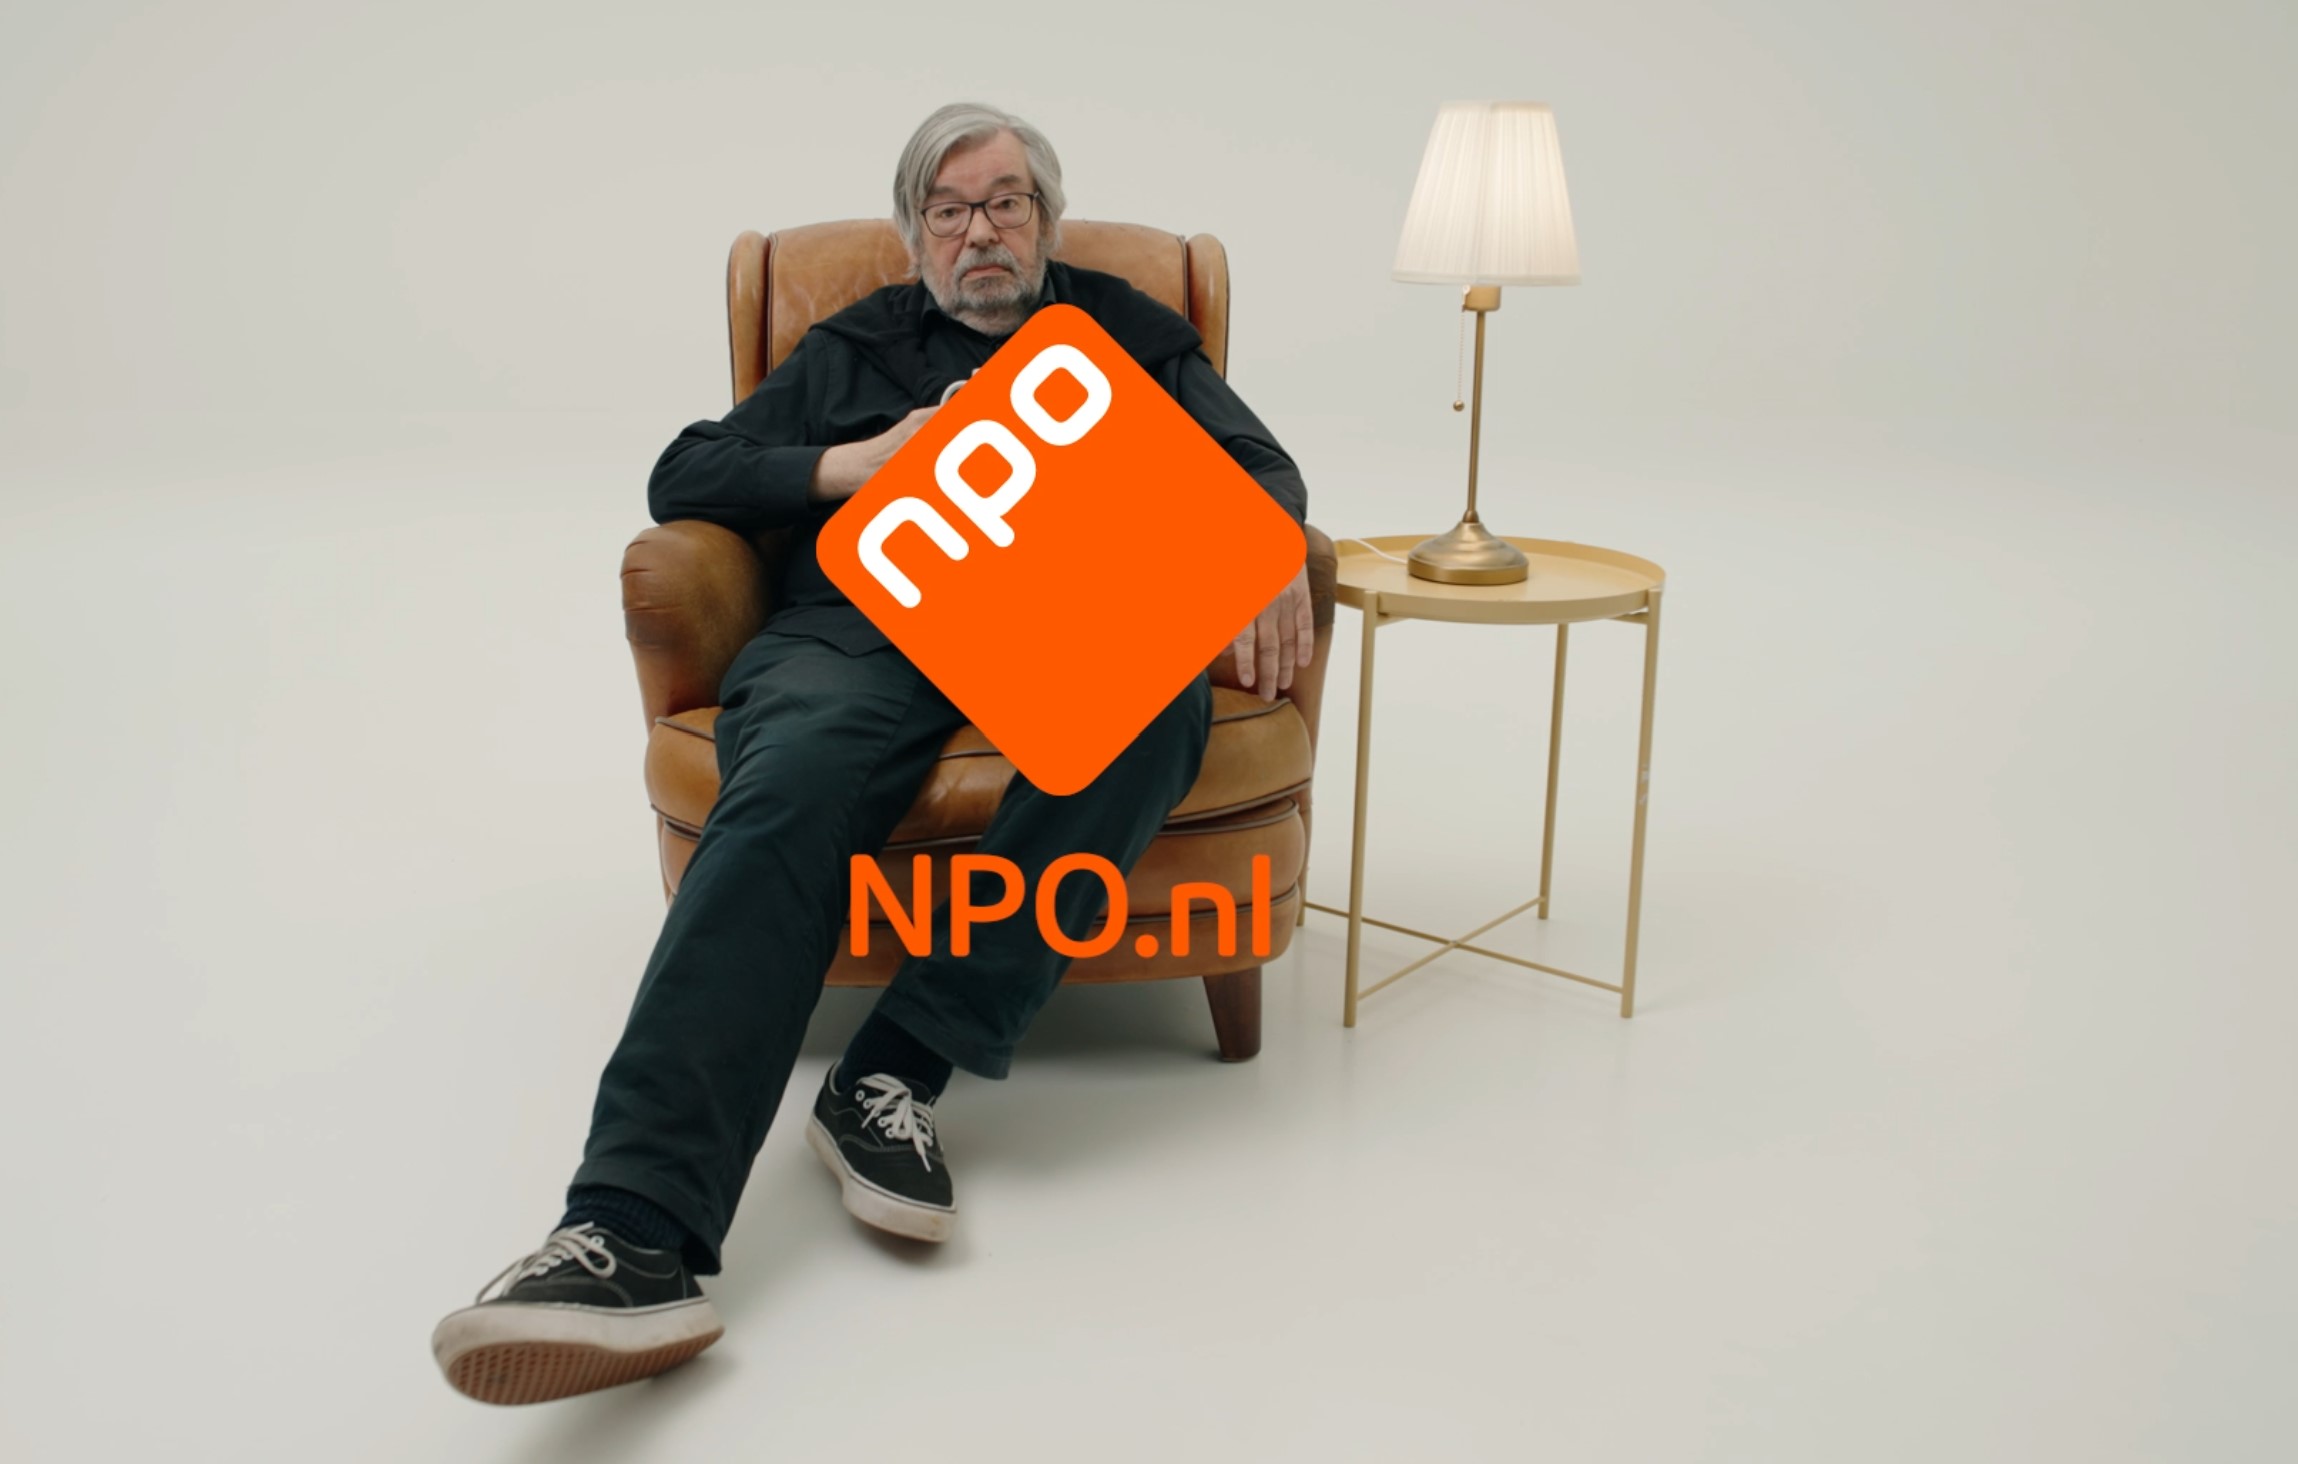 Online stagiair voor NPO.nl